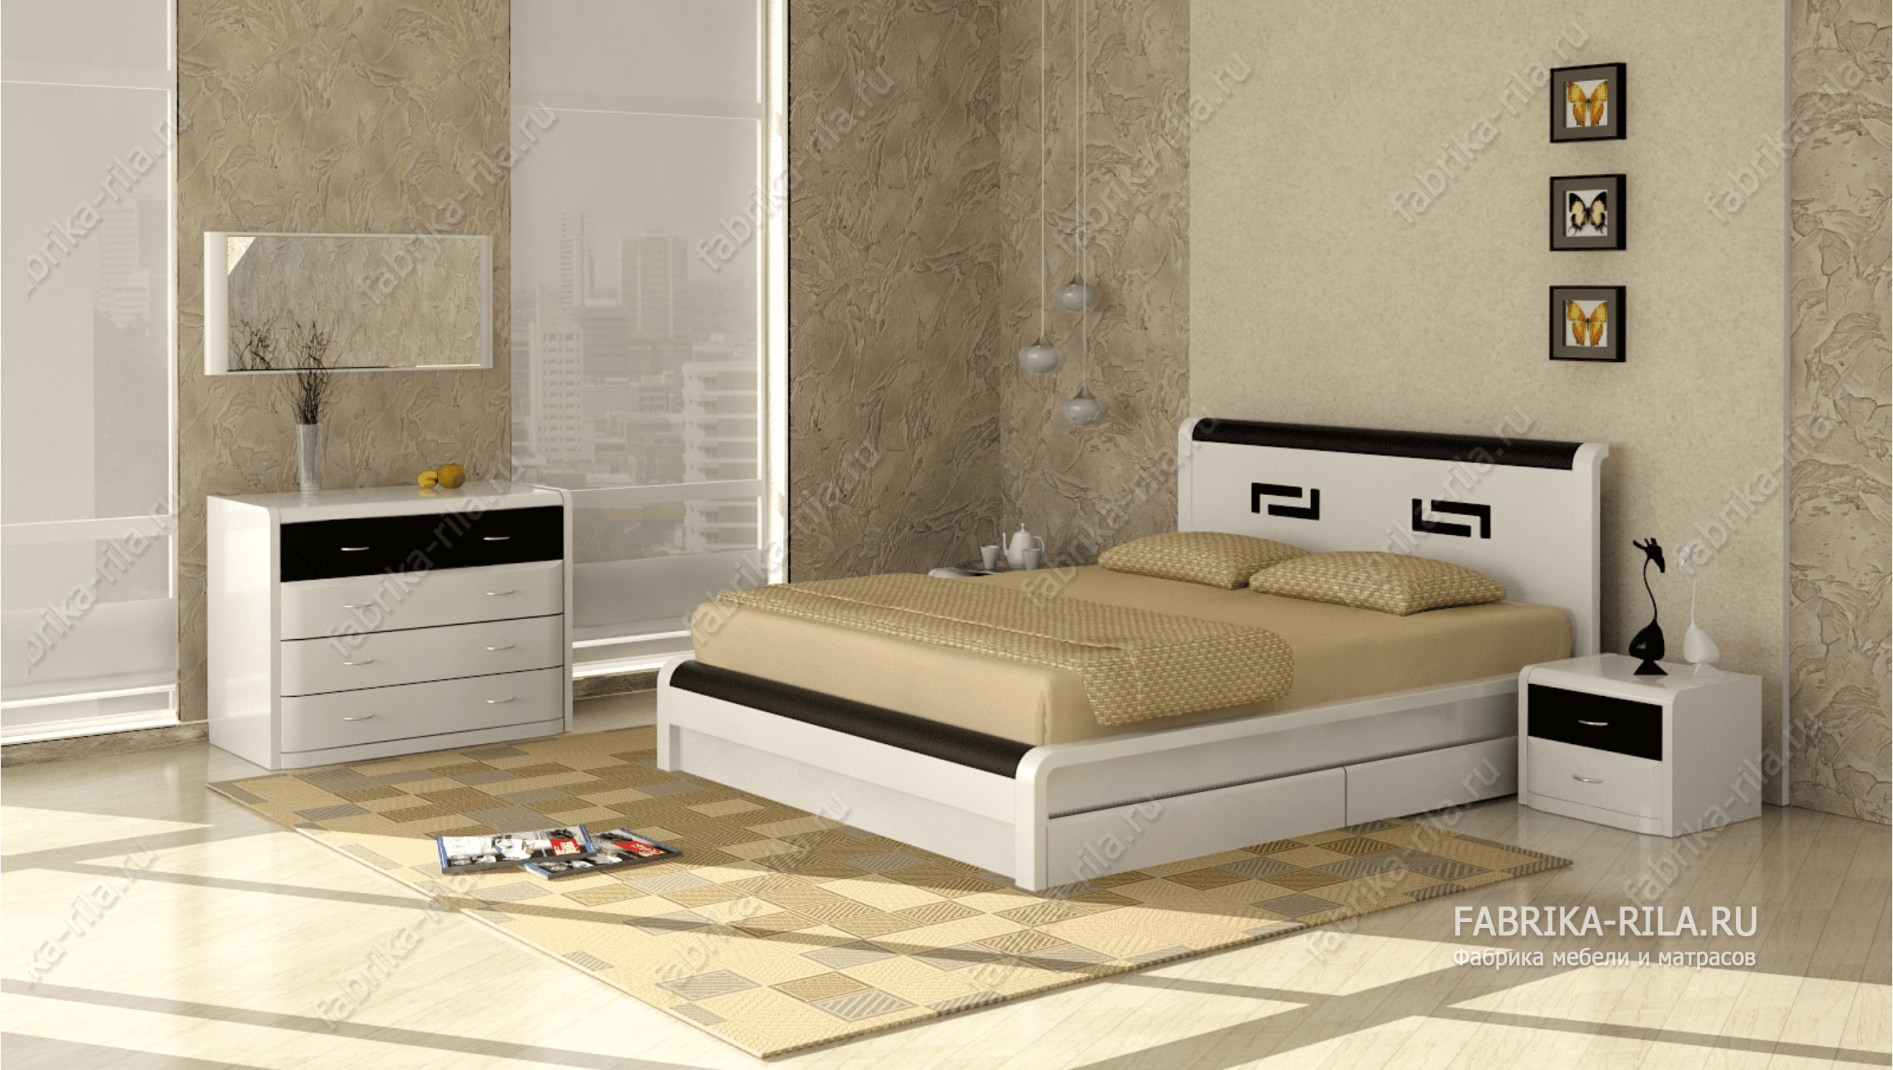 Кровать Arikama 3 — 140x200 см. из сосны